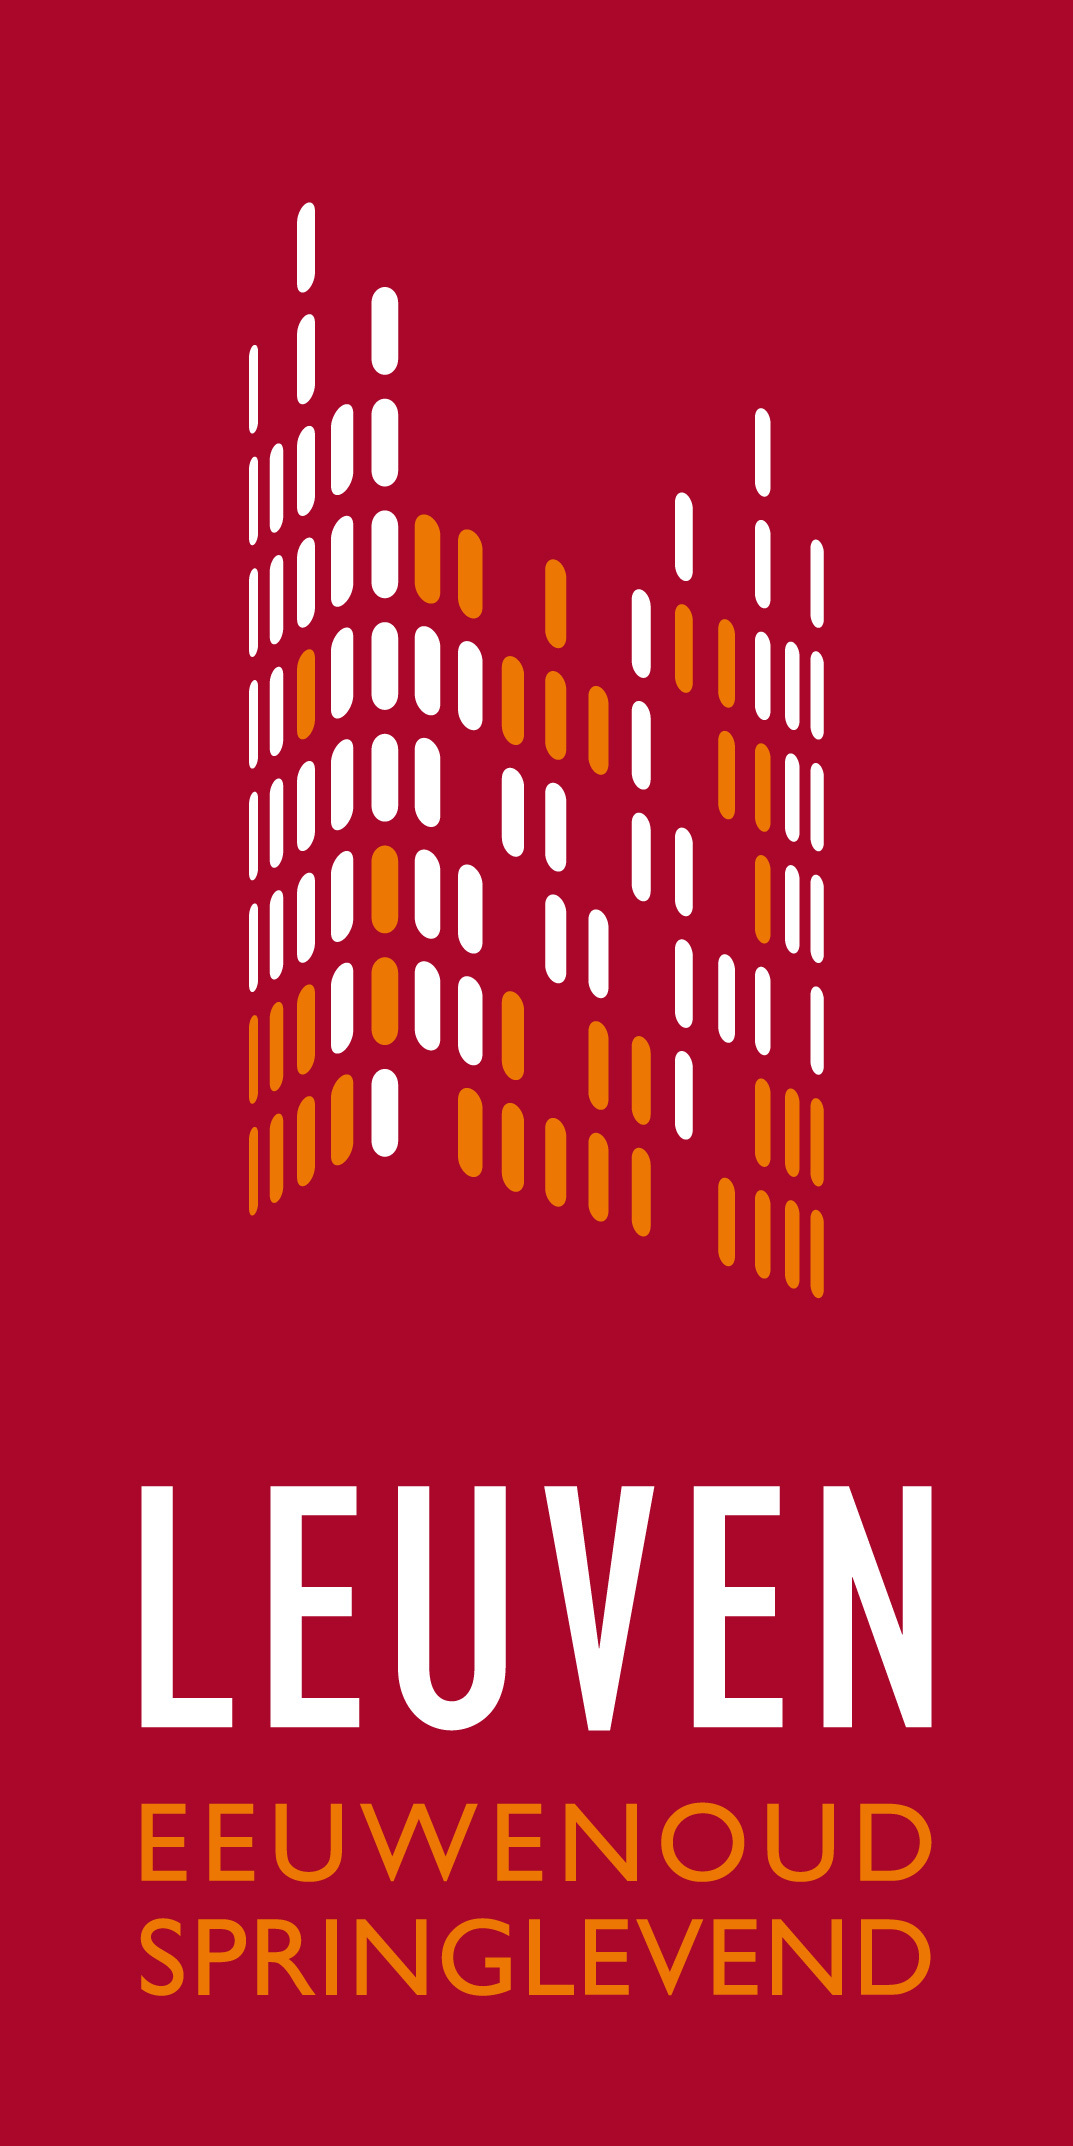 Logo van de stad Leuven. In minuscule rechthoekjes werd het stadhuis van Leuven nagebootst. Daaronder staat de tekst Leuven: eeuwenoud, springlevend